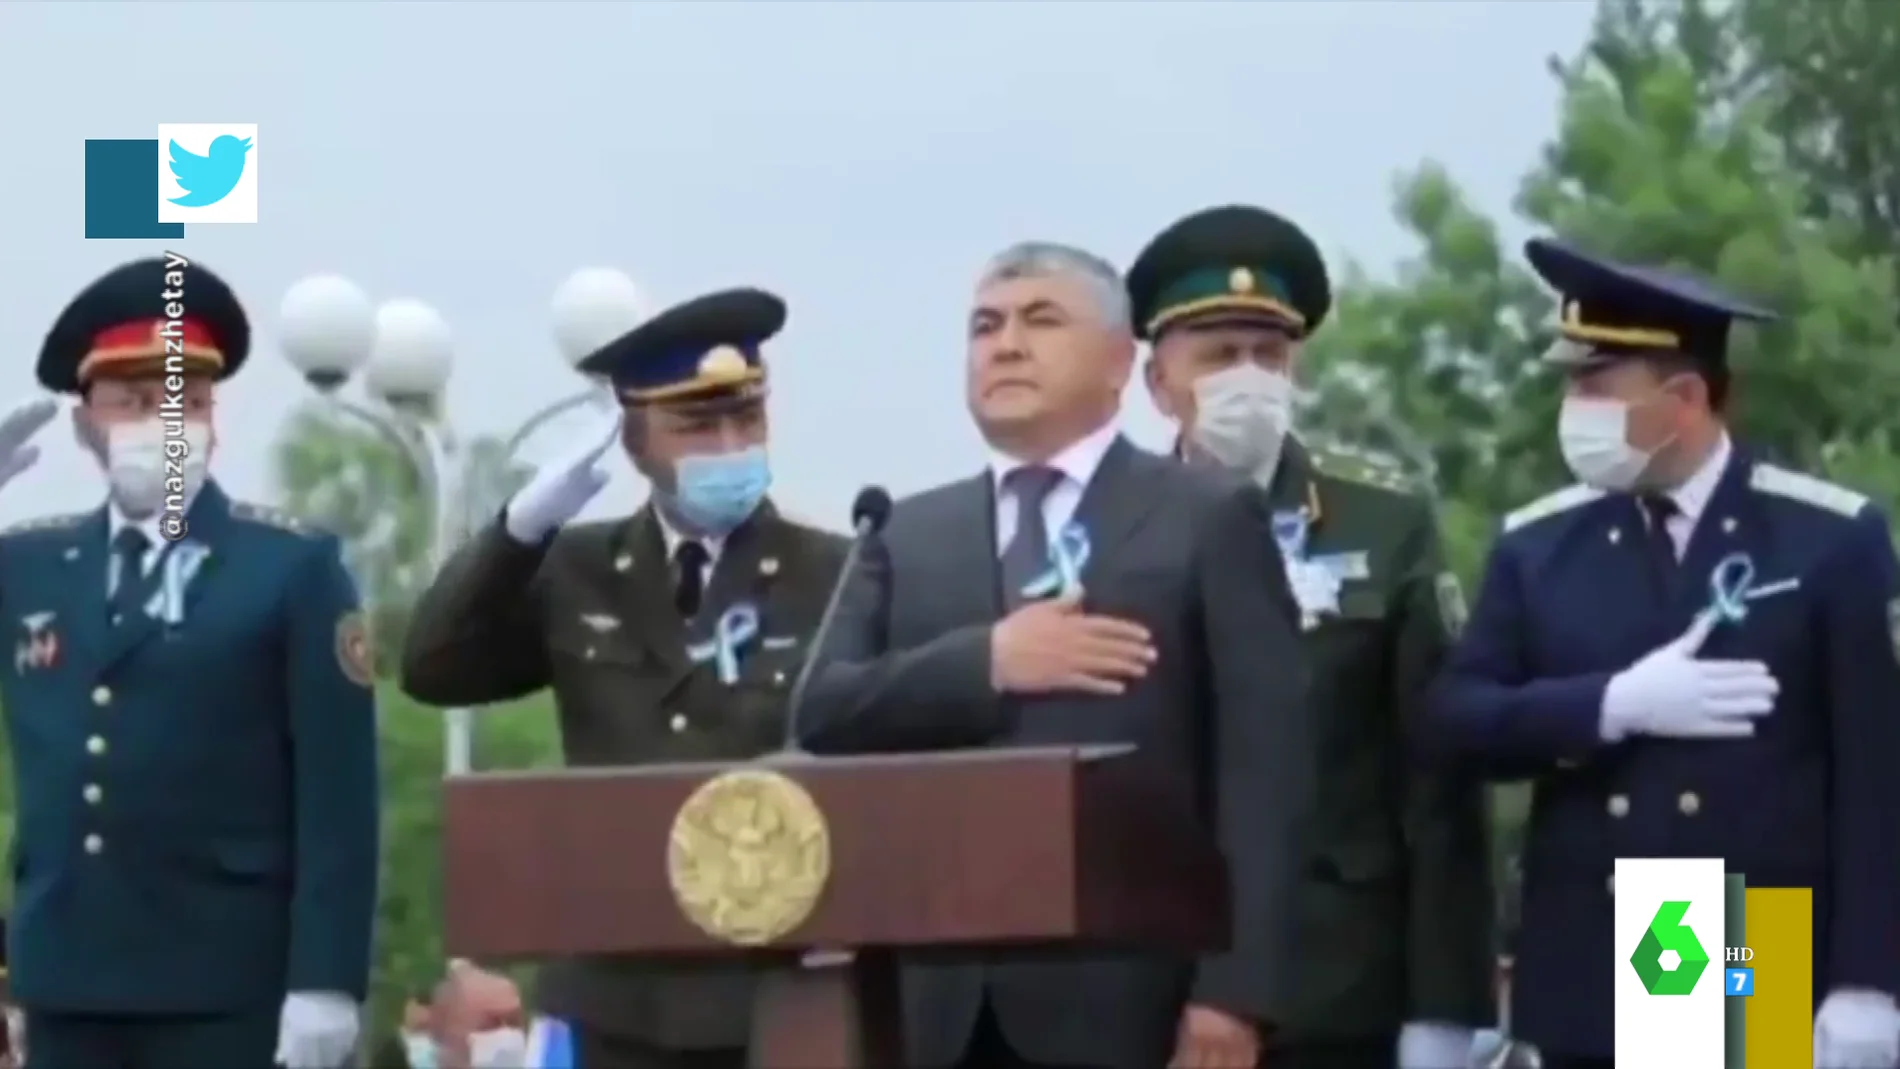 La descoordinación de unos militares de Uzbekistán durante el himno nacional